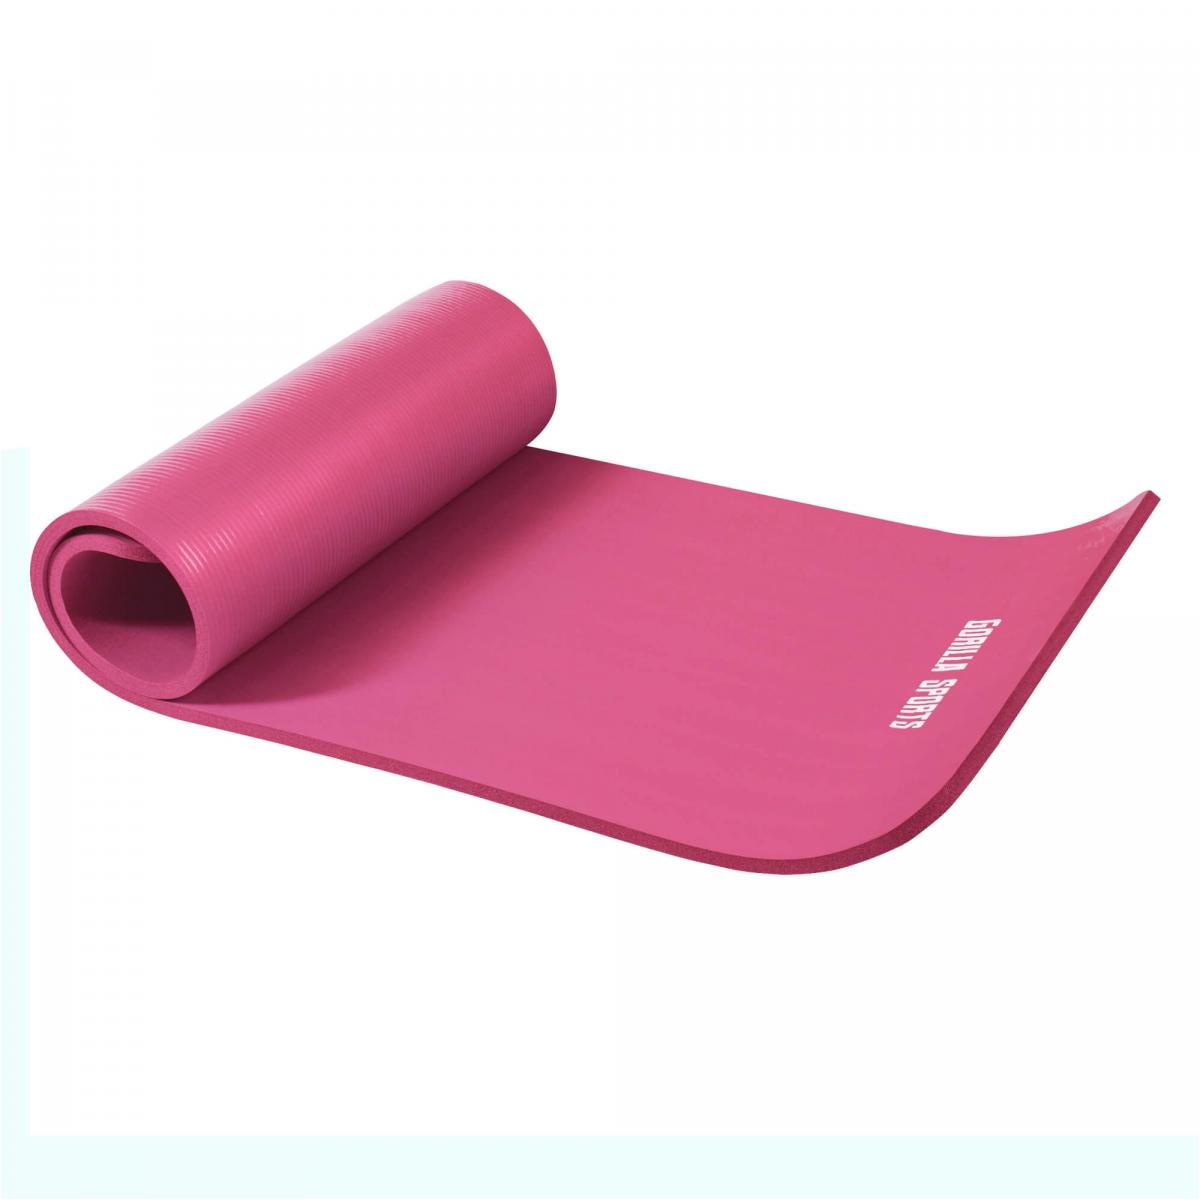 Petit tapis de yoga en mousse - 190 x 60 x 1,5 cm (Yoga - Pilates - sport Ã domicile) Rose